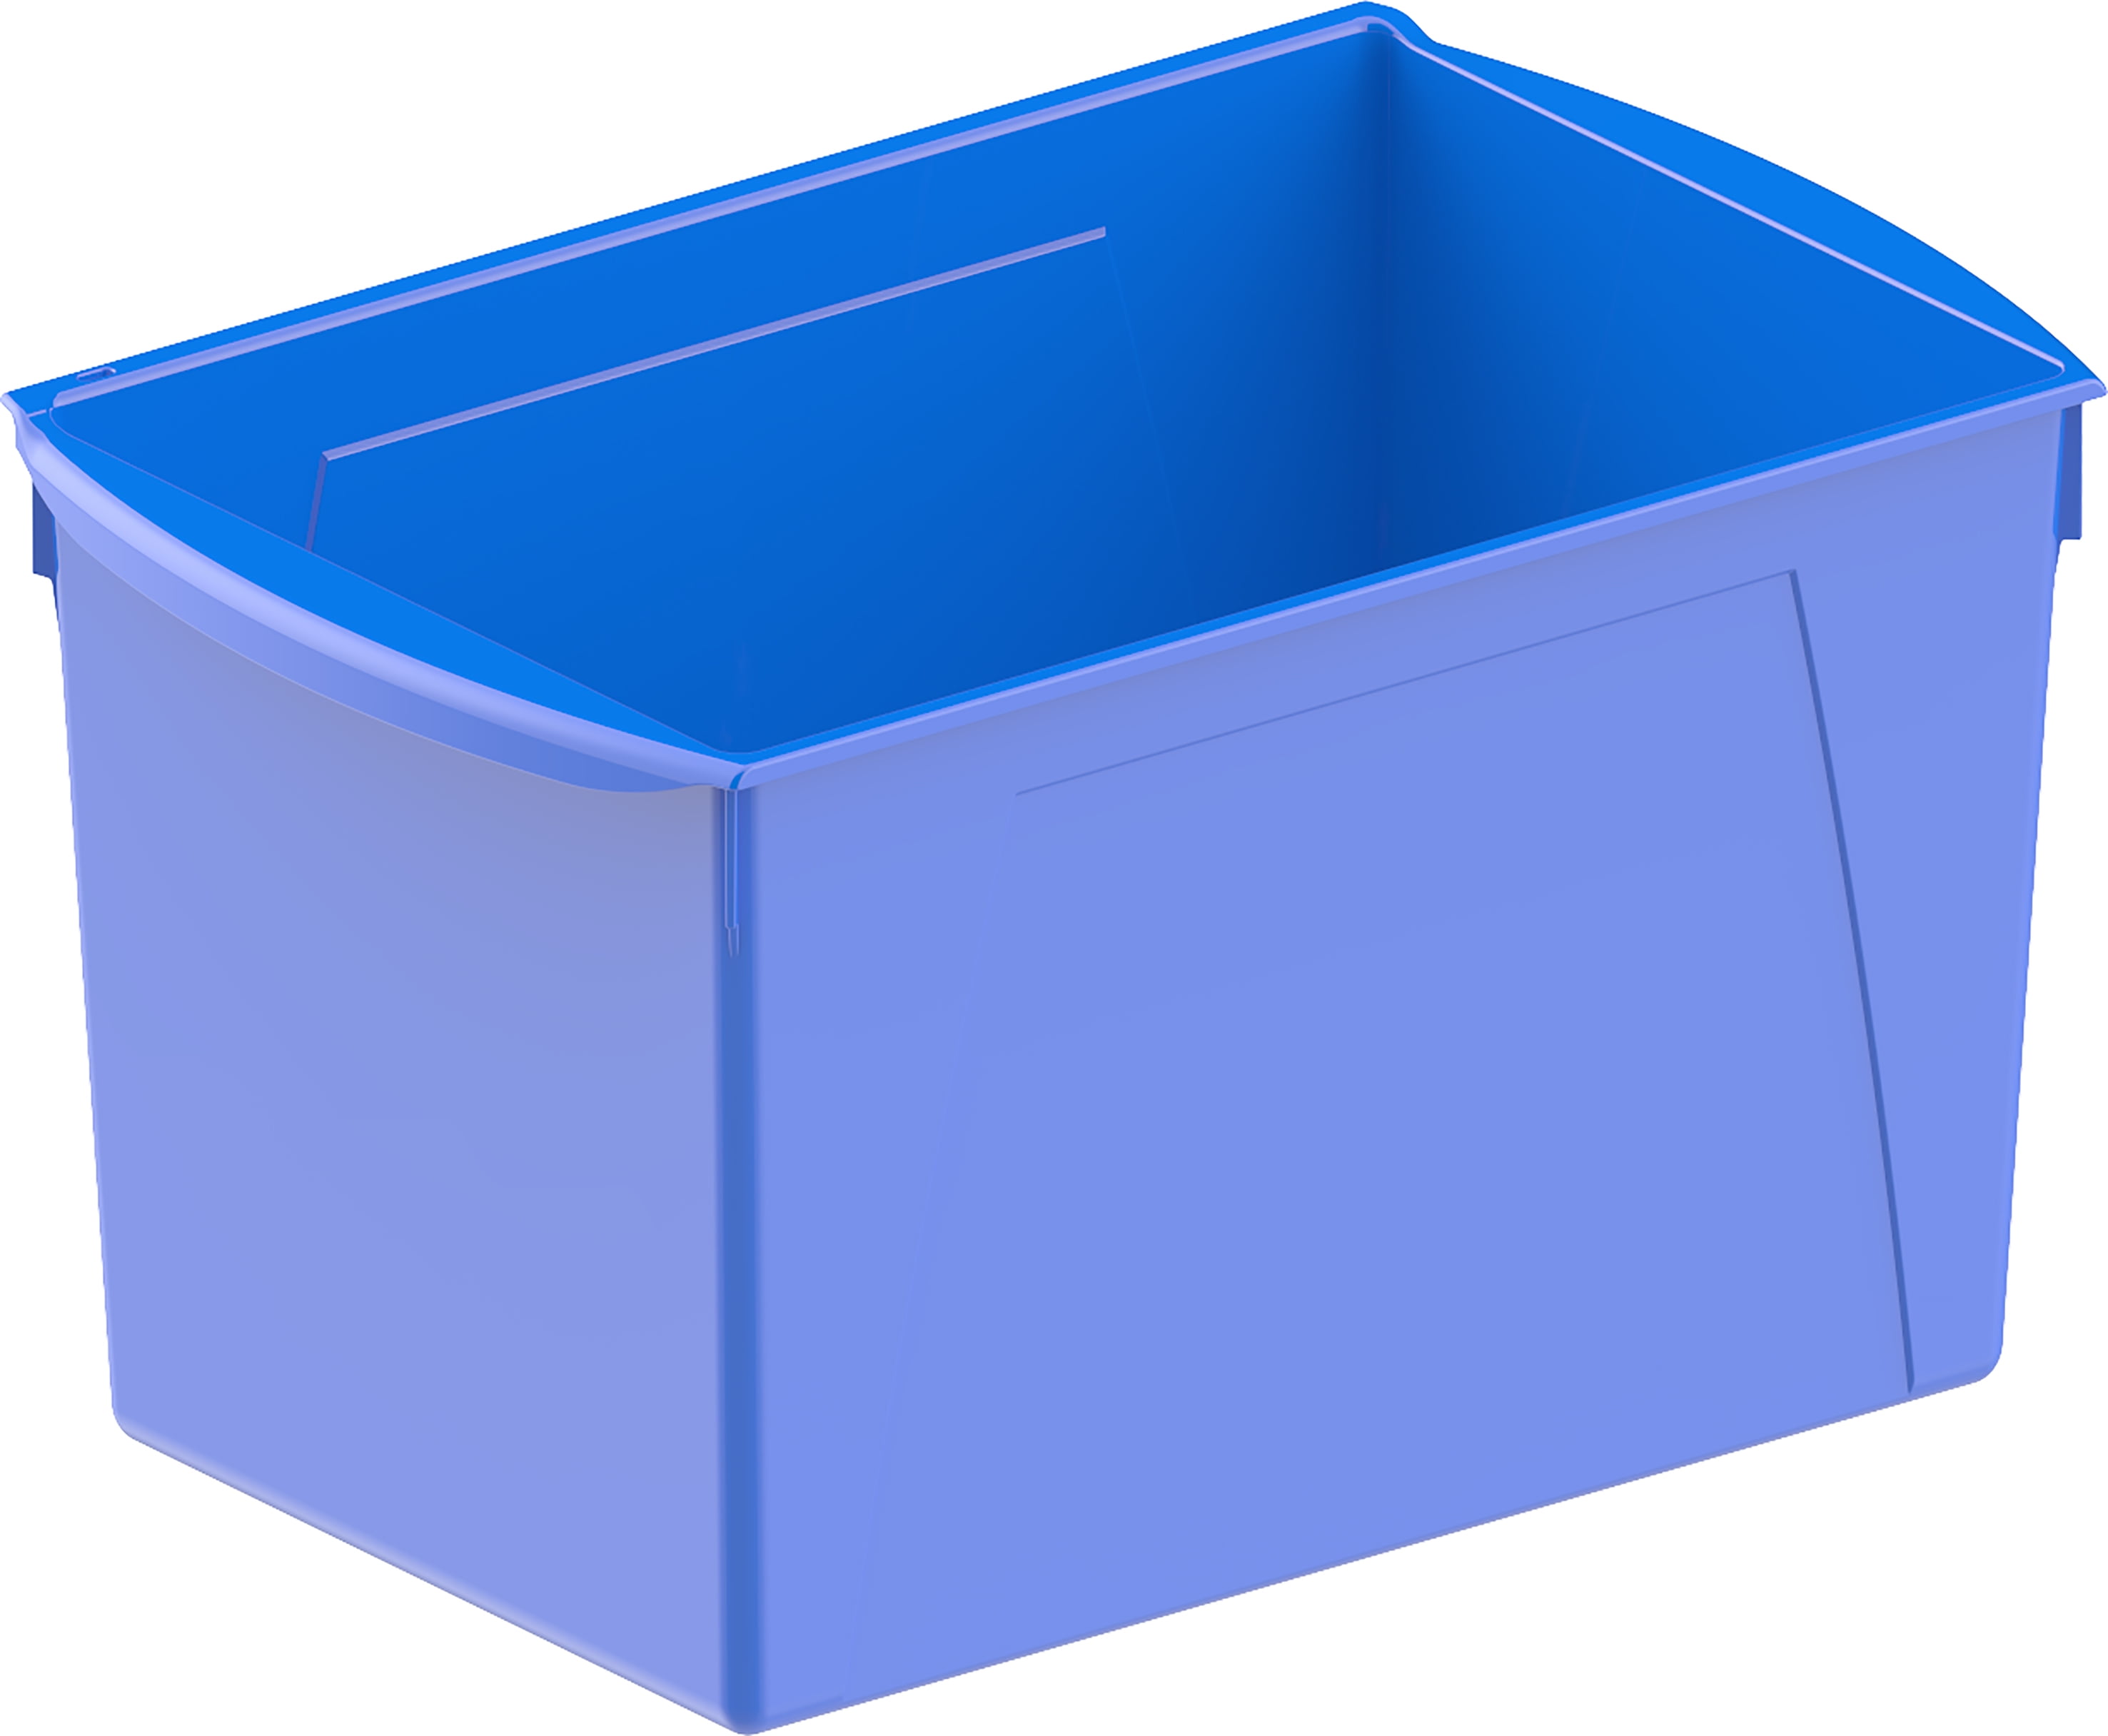 Plastic storage bin 500x310x200 mm, 28L blue